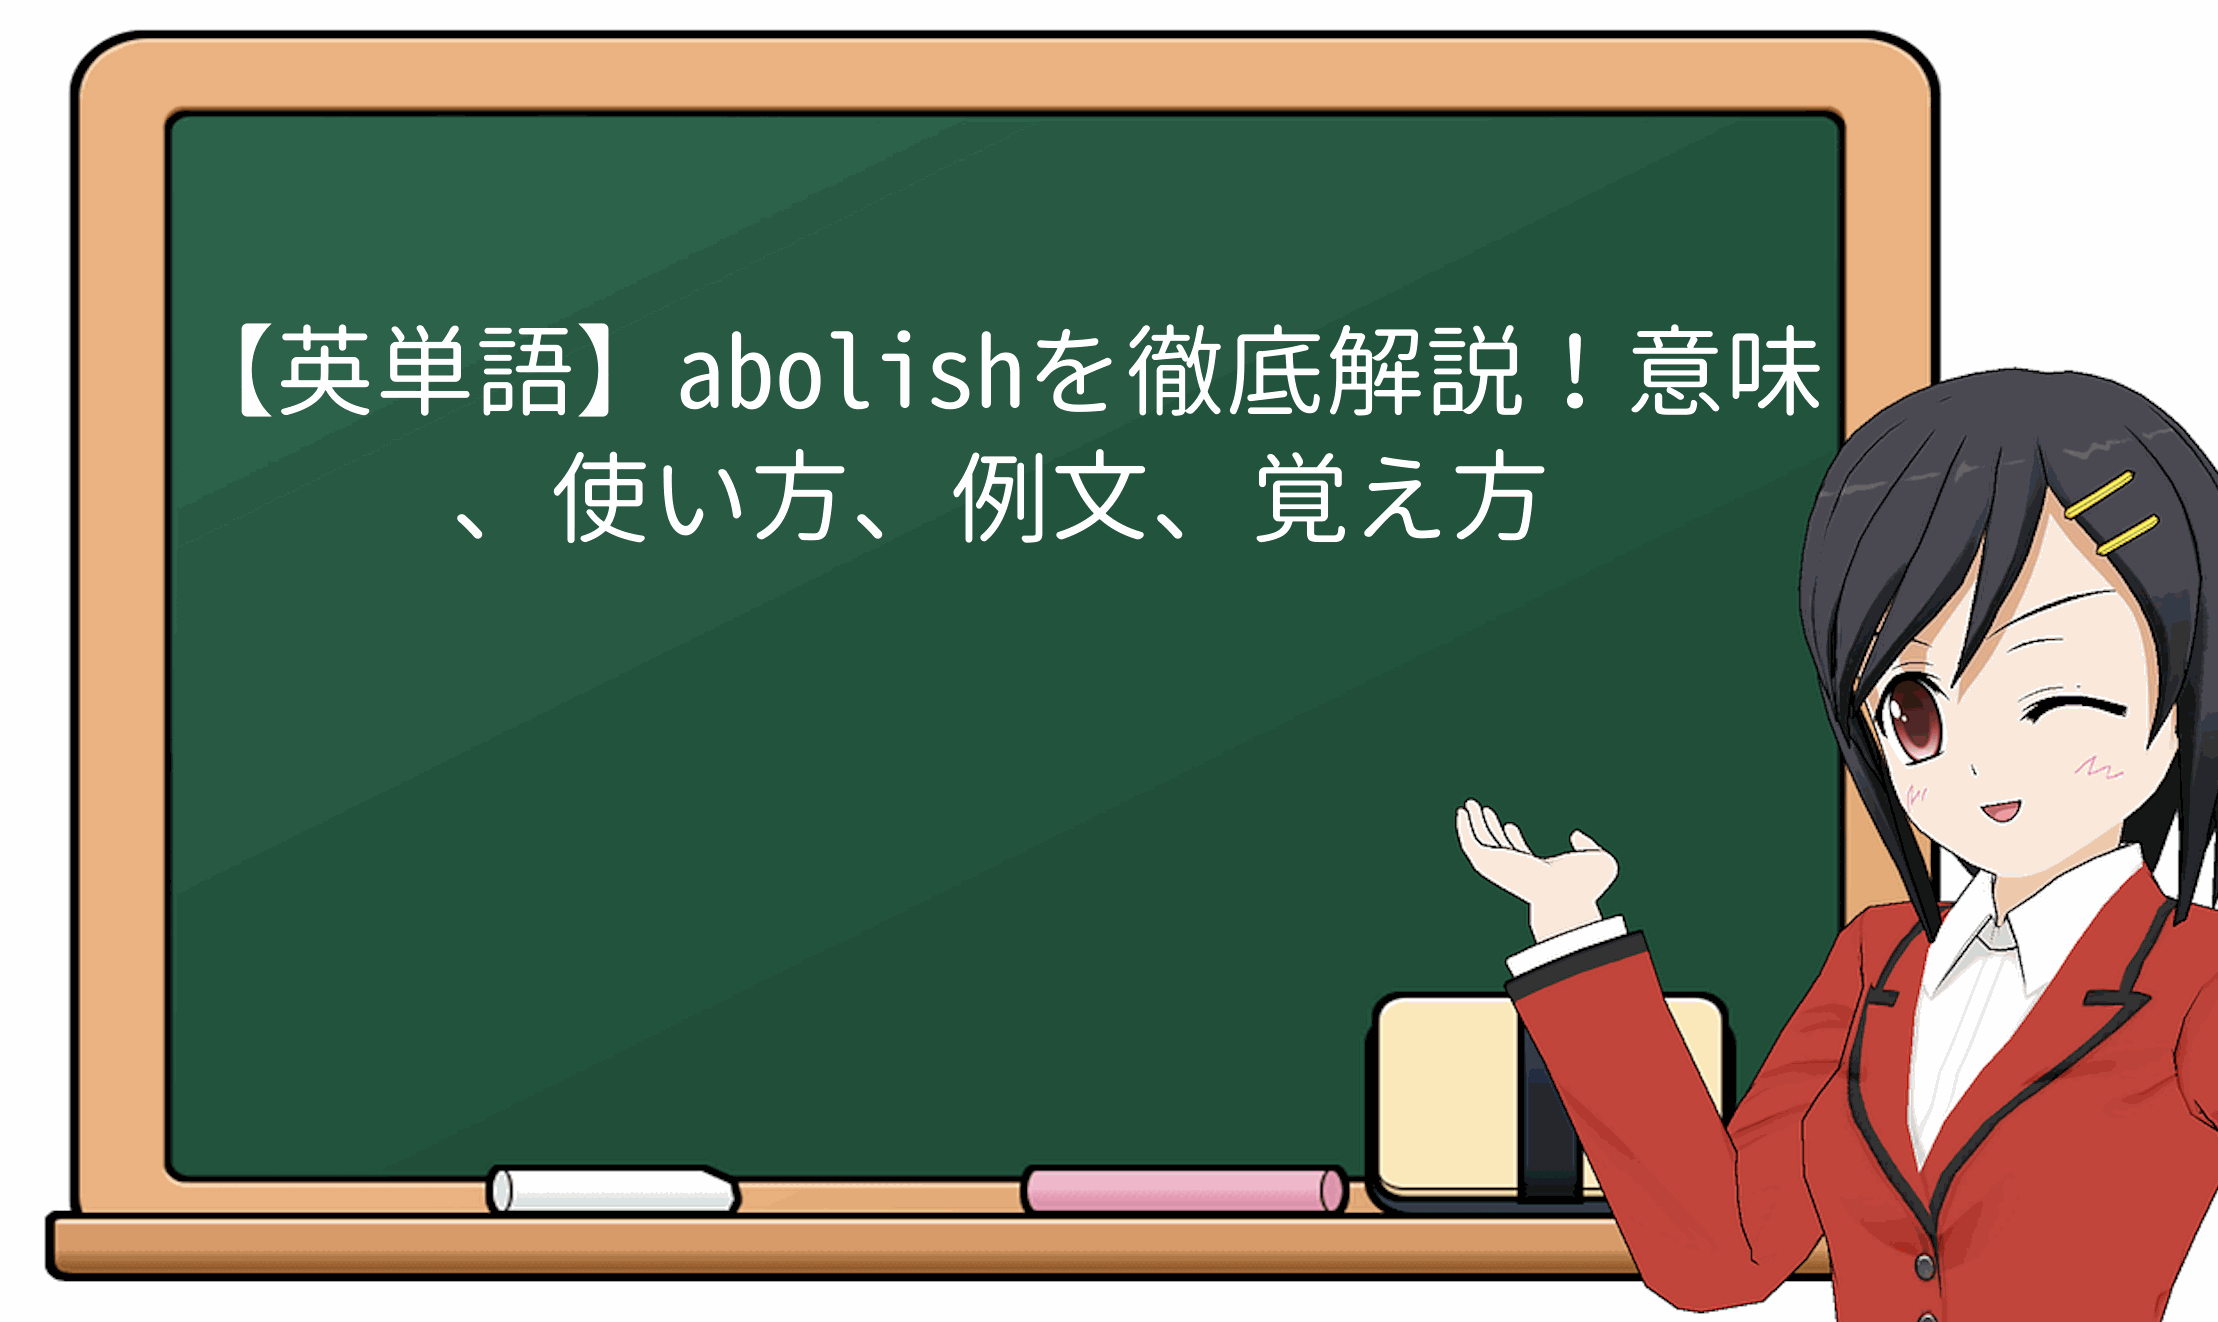 【英単語】abolishを徹底解説！意味、使い方、例文、覚え方